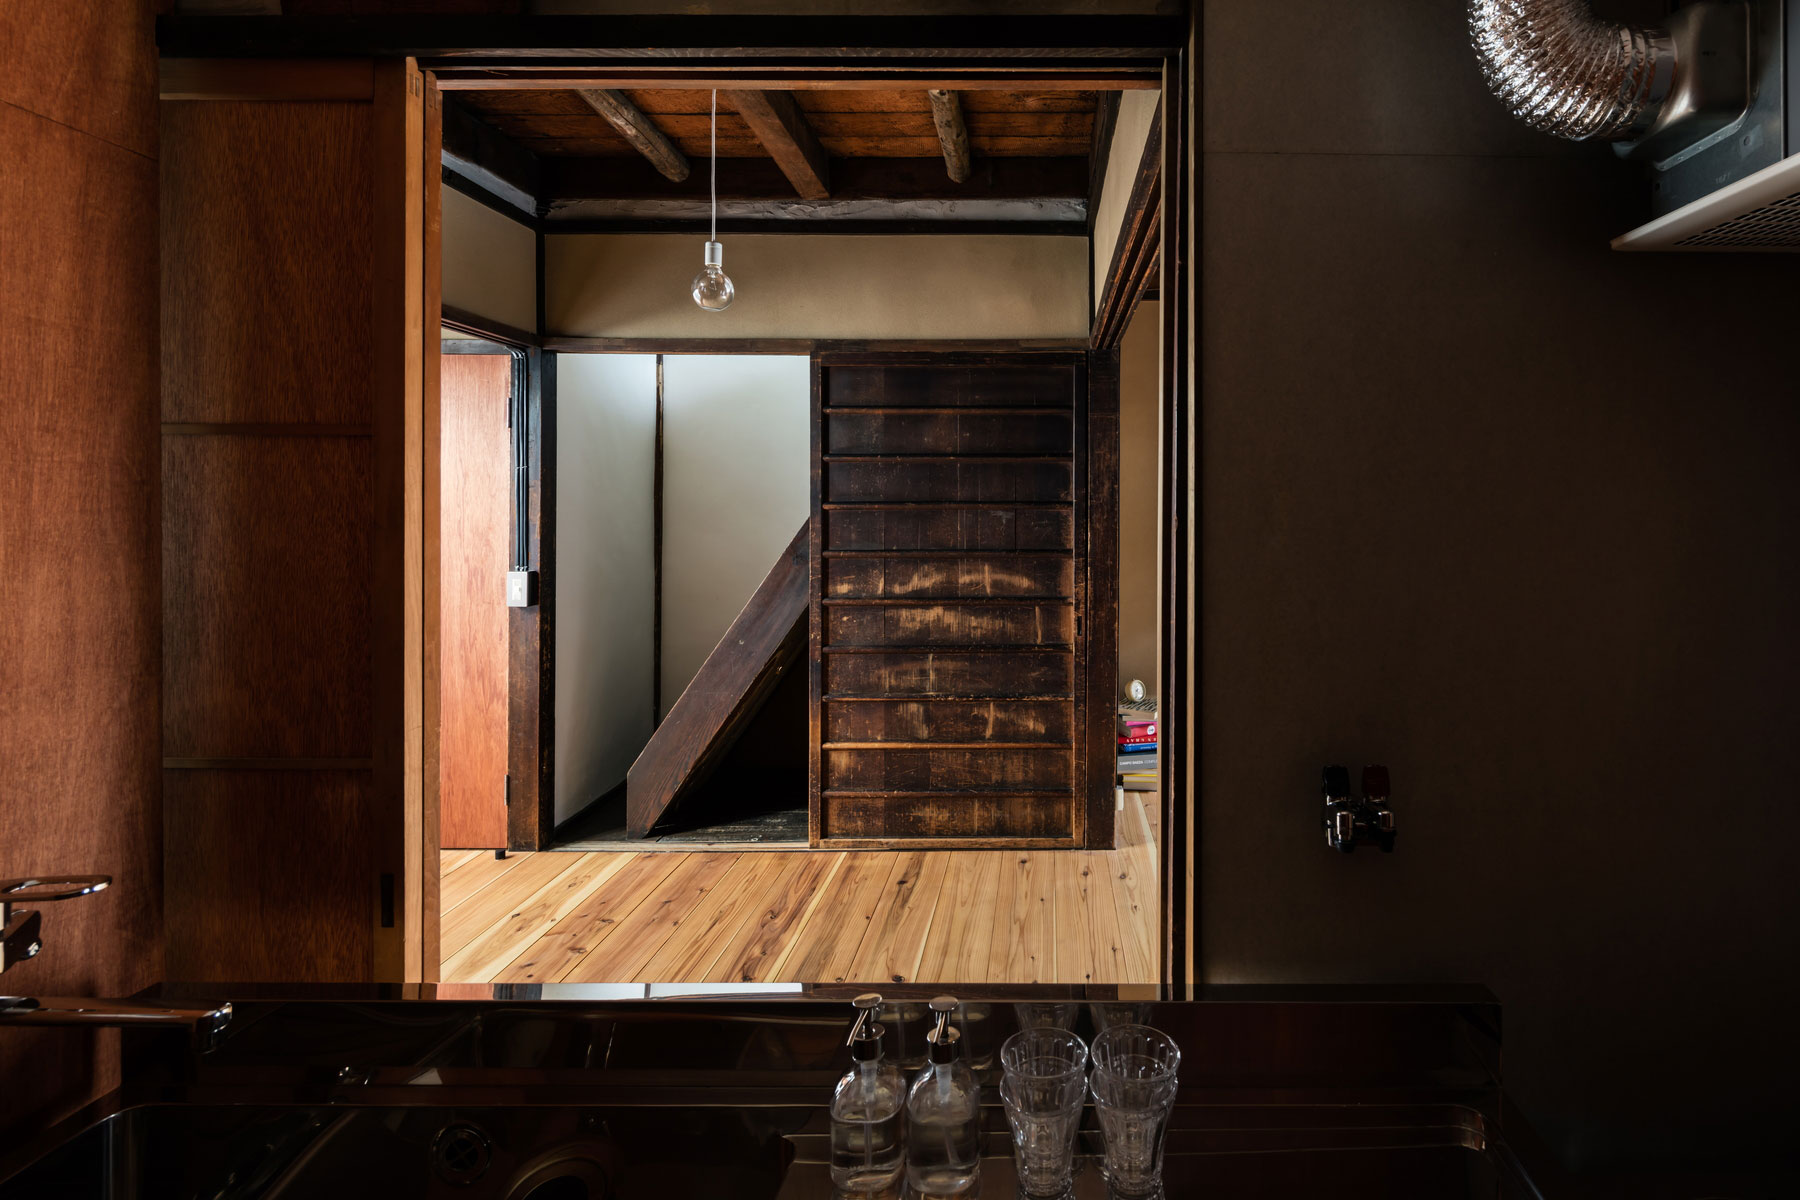 キッチンは居間に向かって配置し、引違戸を開ければ対面キッチンとして利用できる仕組み。ダイニング天井は2階荒板表し。